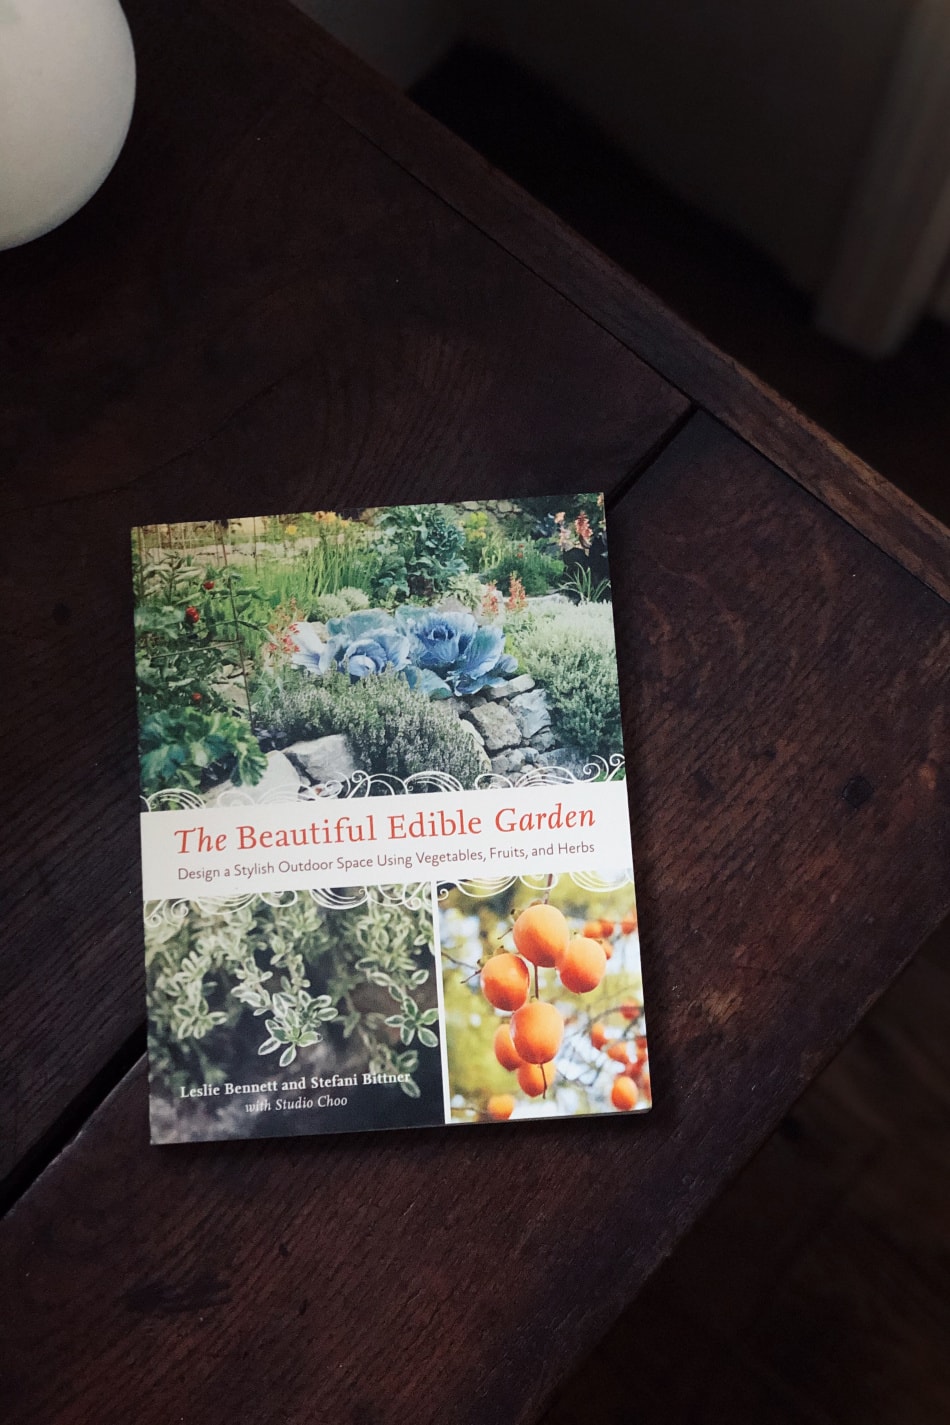 The Beautiful Edible Garden book on a table